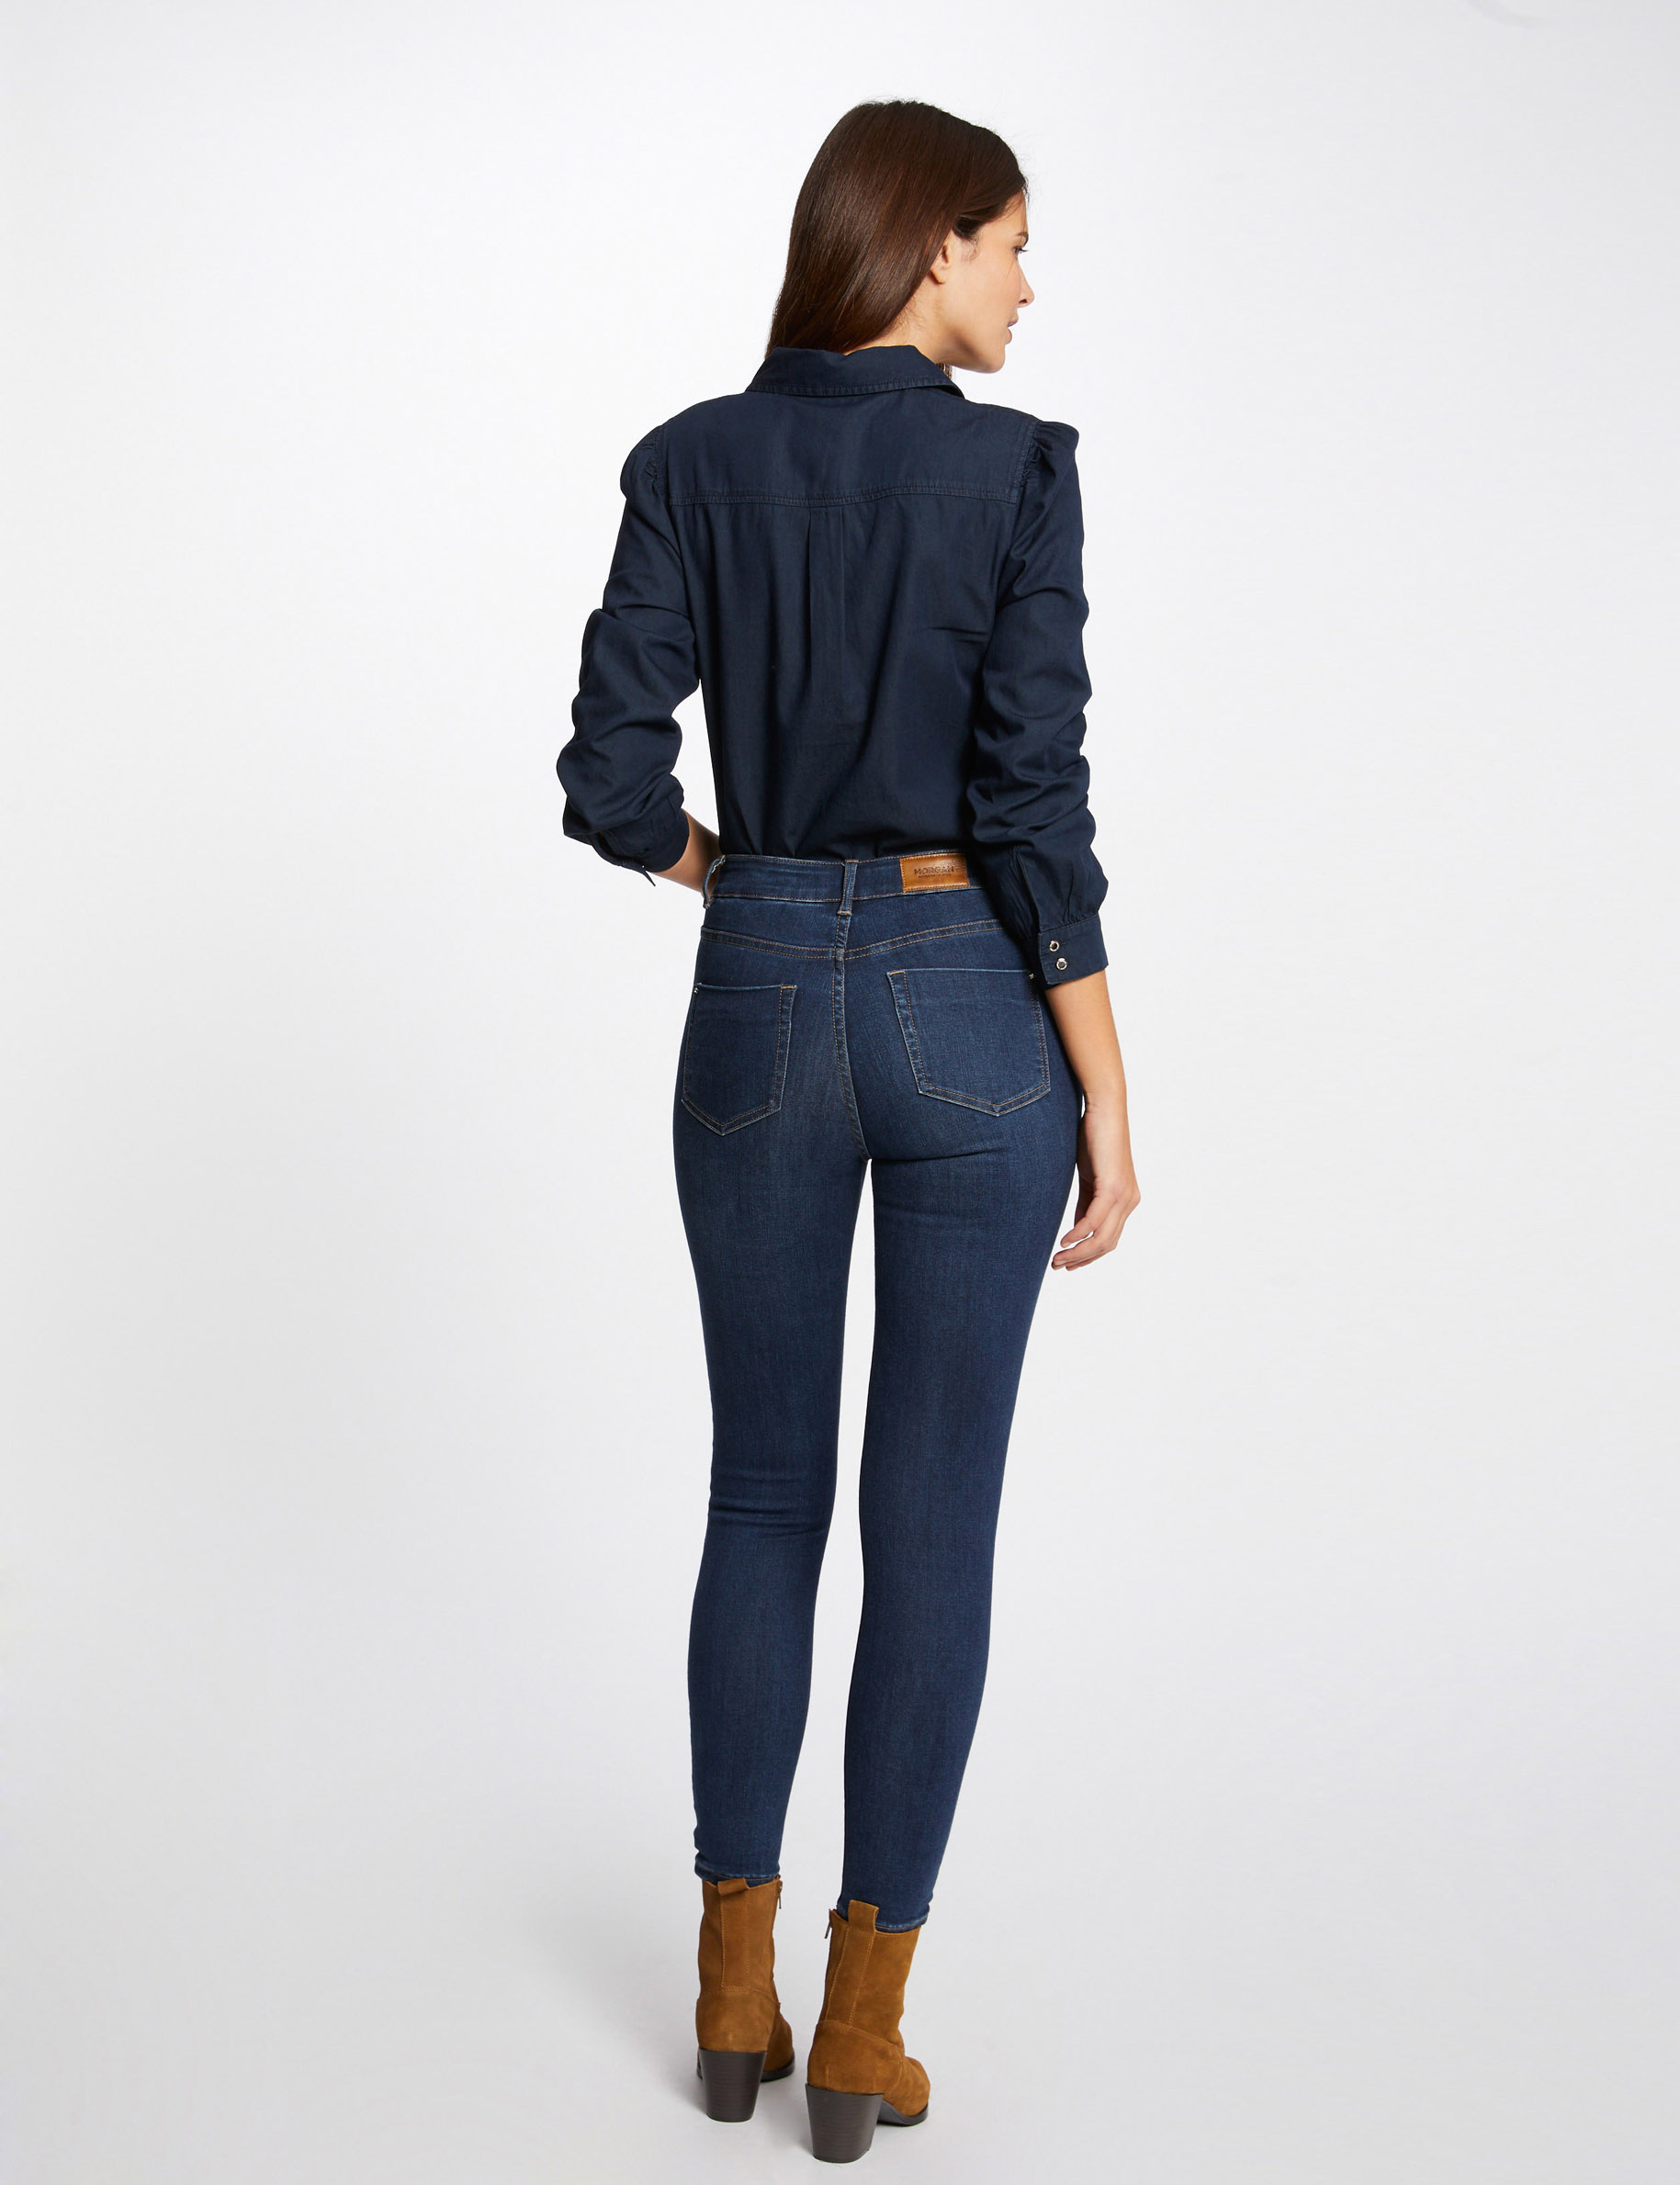 Chemise manches longues en jean jean brut femme